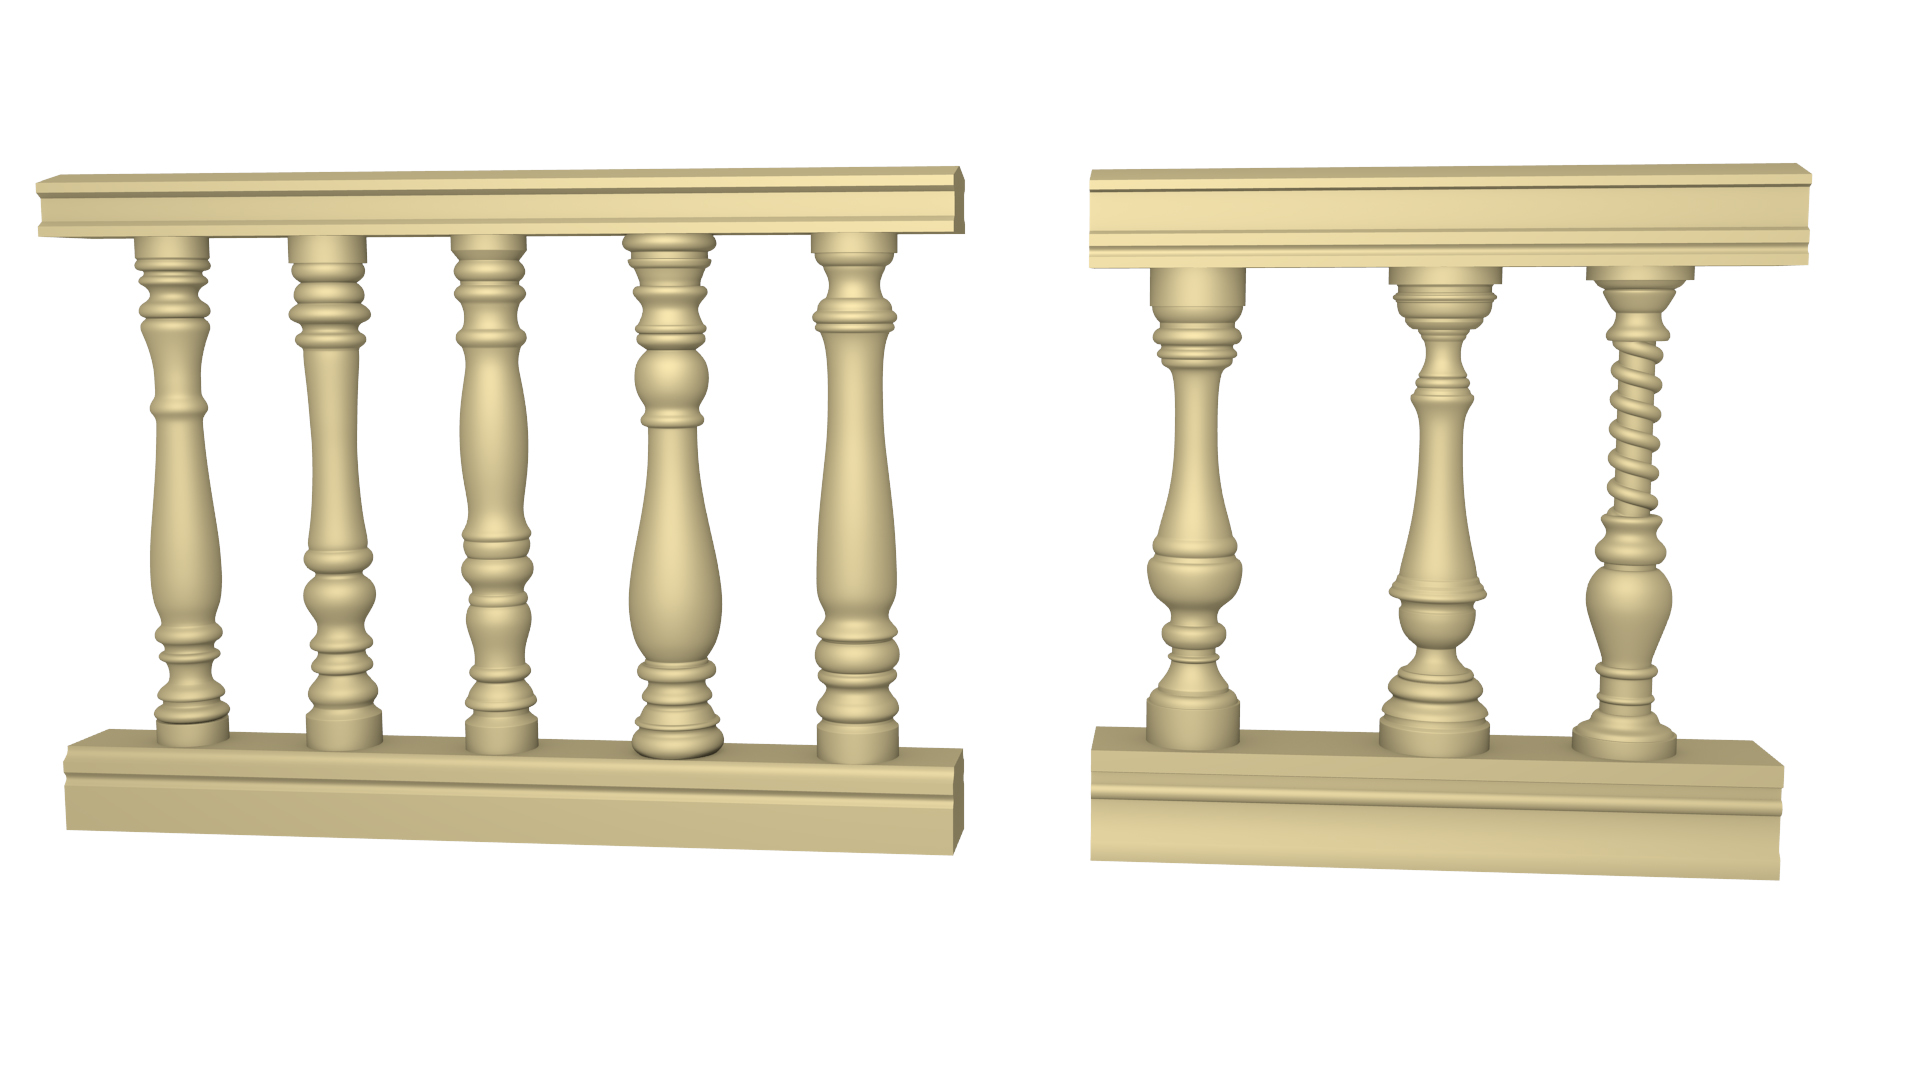 내구성 습기 증거 고품질의 폴리 우레탄 장식 기둥 성형 라운드 자본과 기본 로마 난간